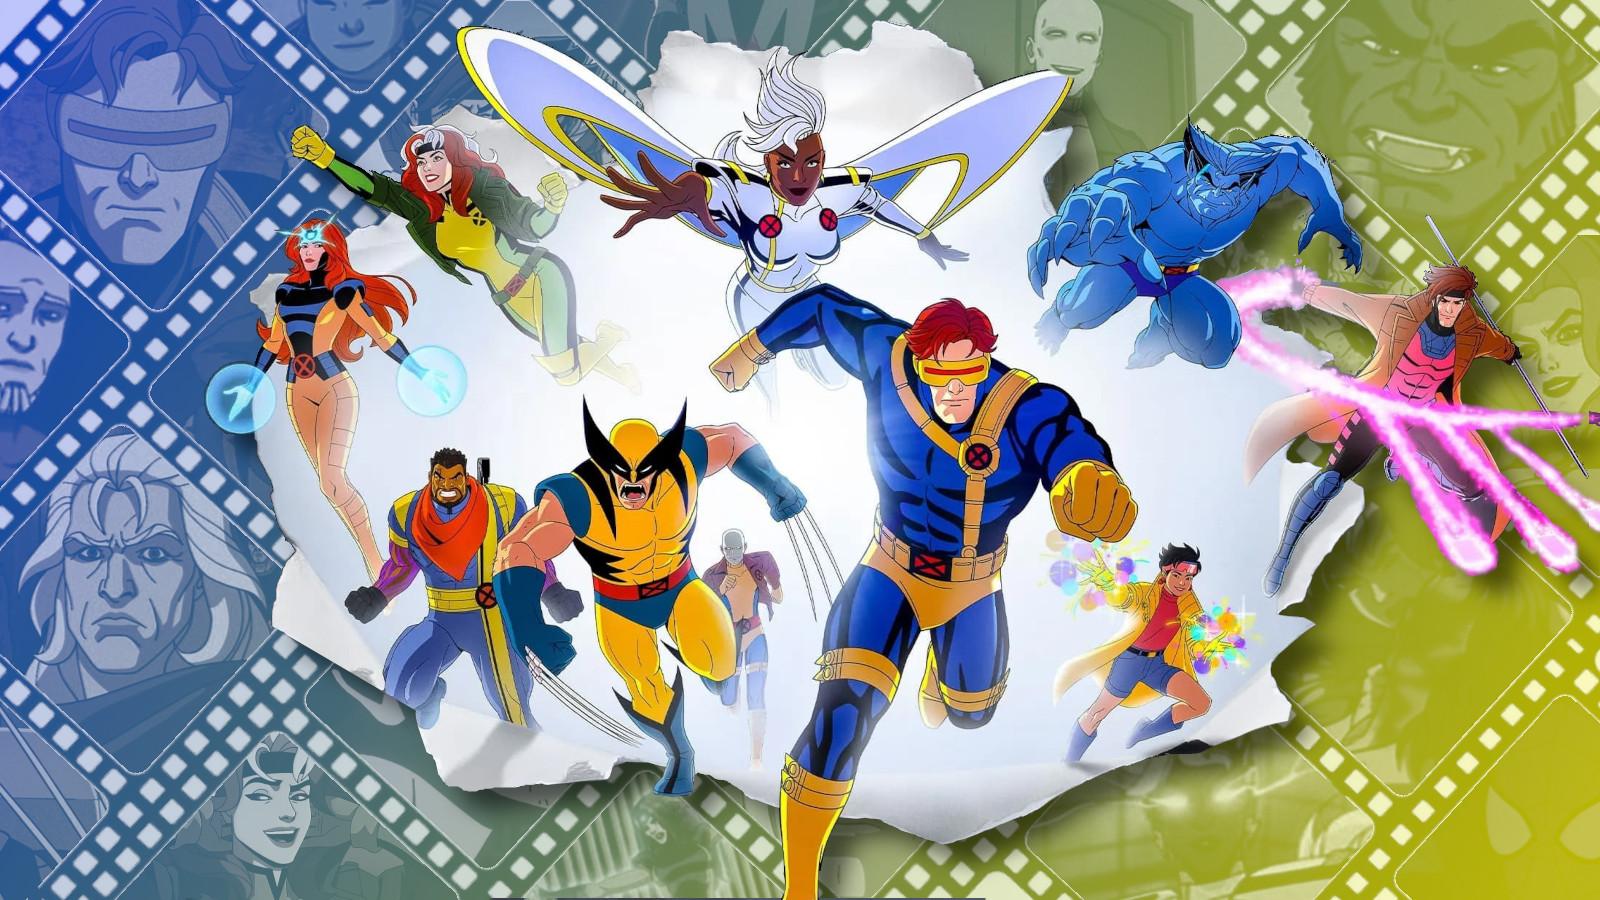 The X-Men '97 cast